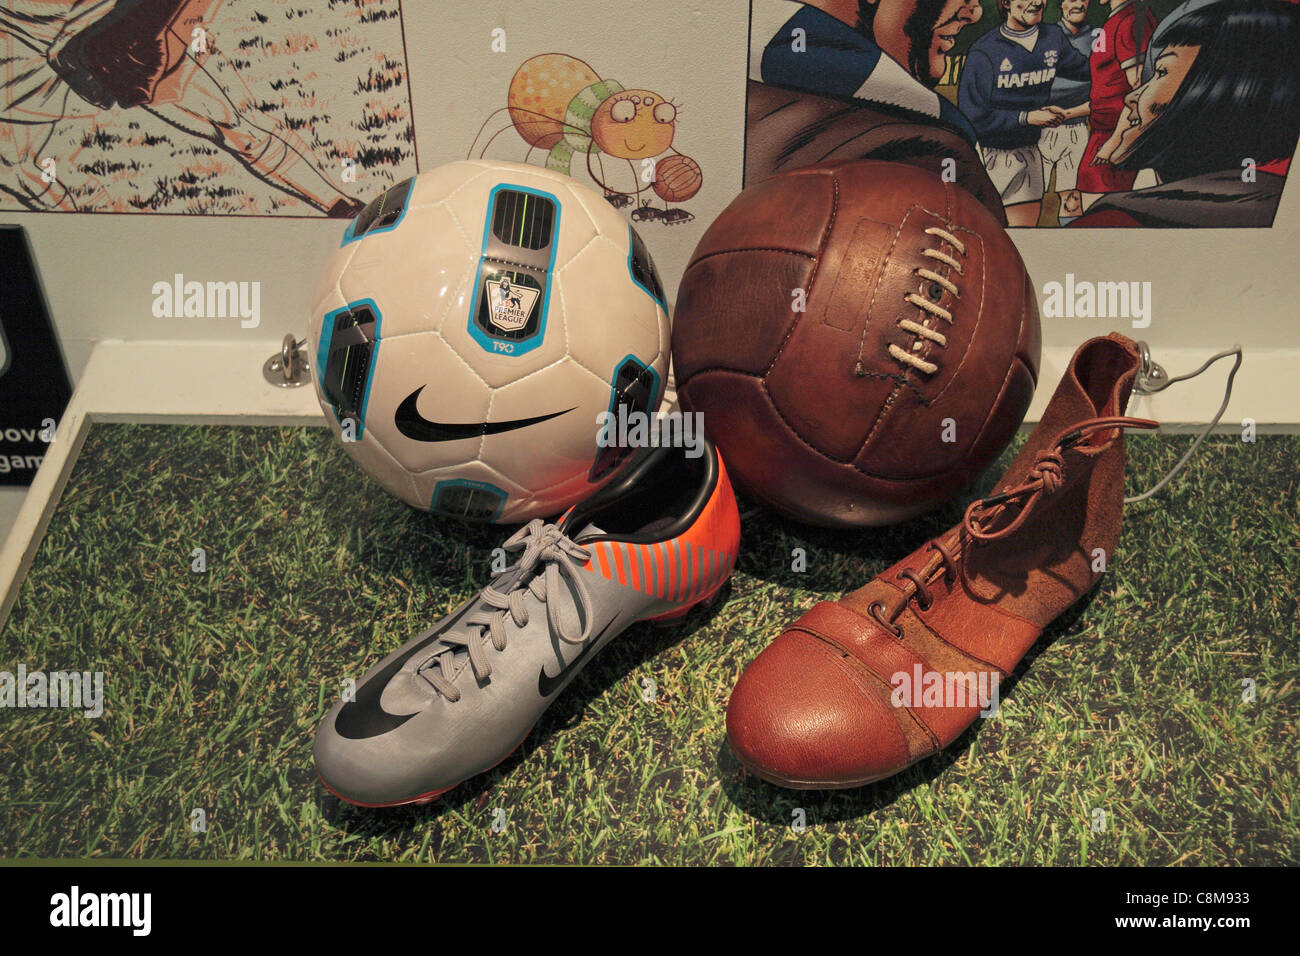 Anzeigen Vergleich alte und neue Fußbälle & Fußballschuhe im Museum von Liverpool am Molenkopf, Liverpool, UK. Stockfoto